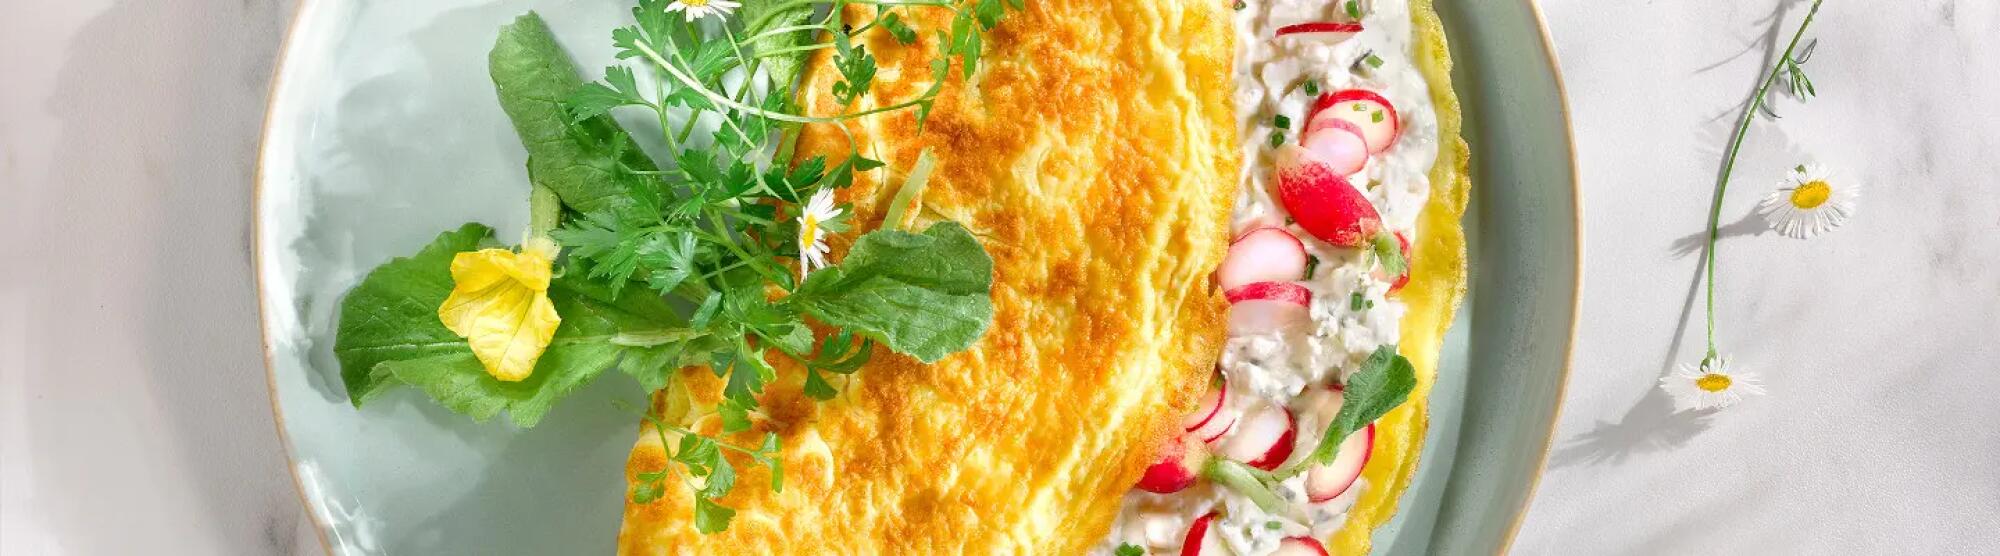 LA02_omelette-printaniere-tartare